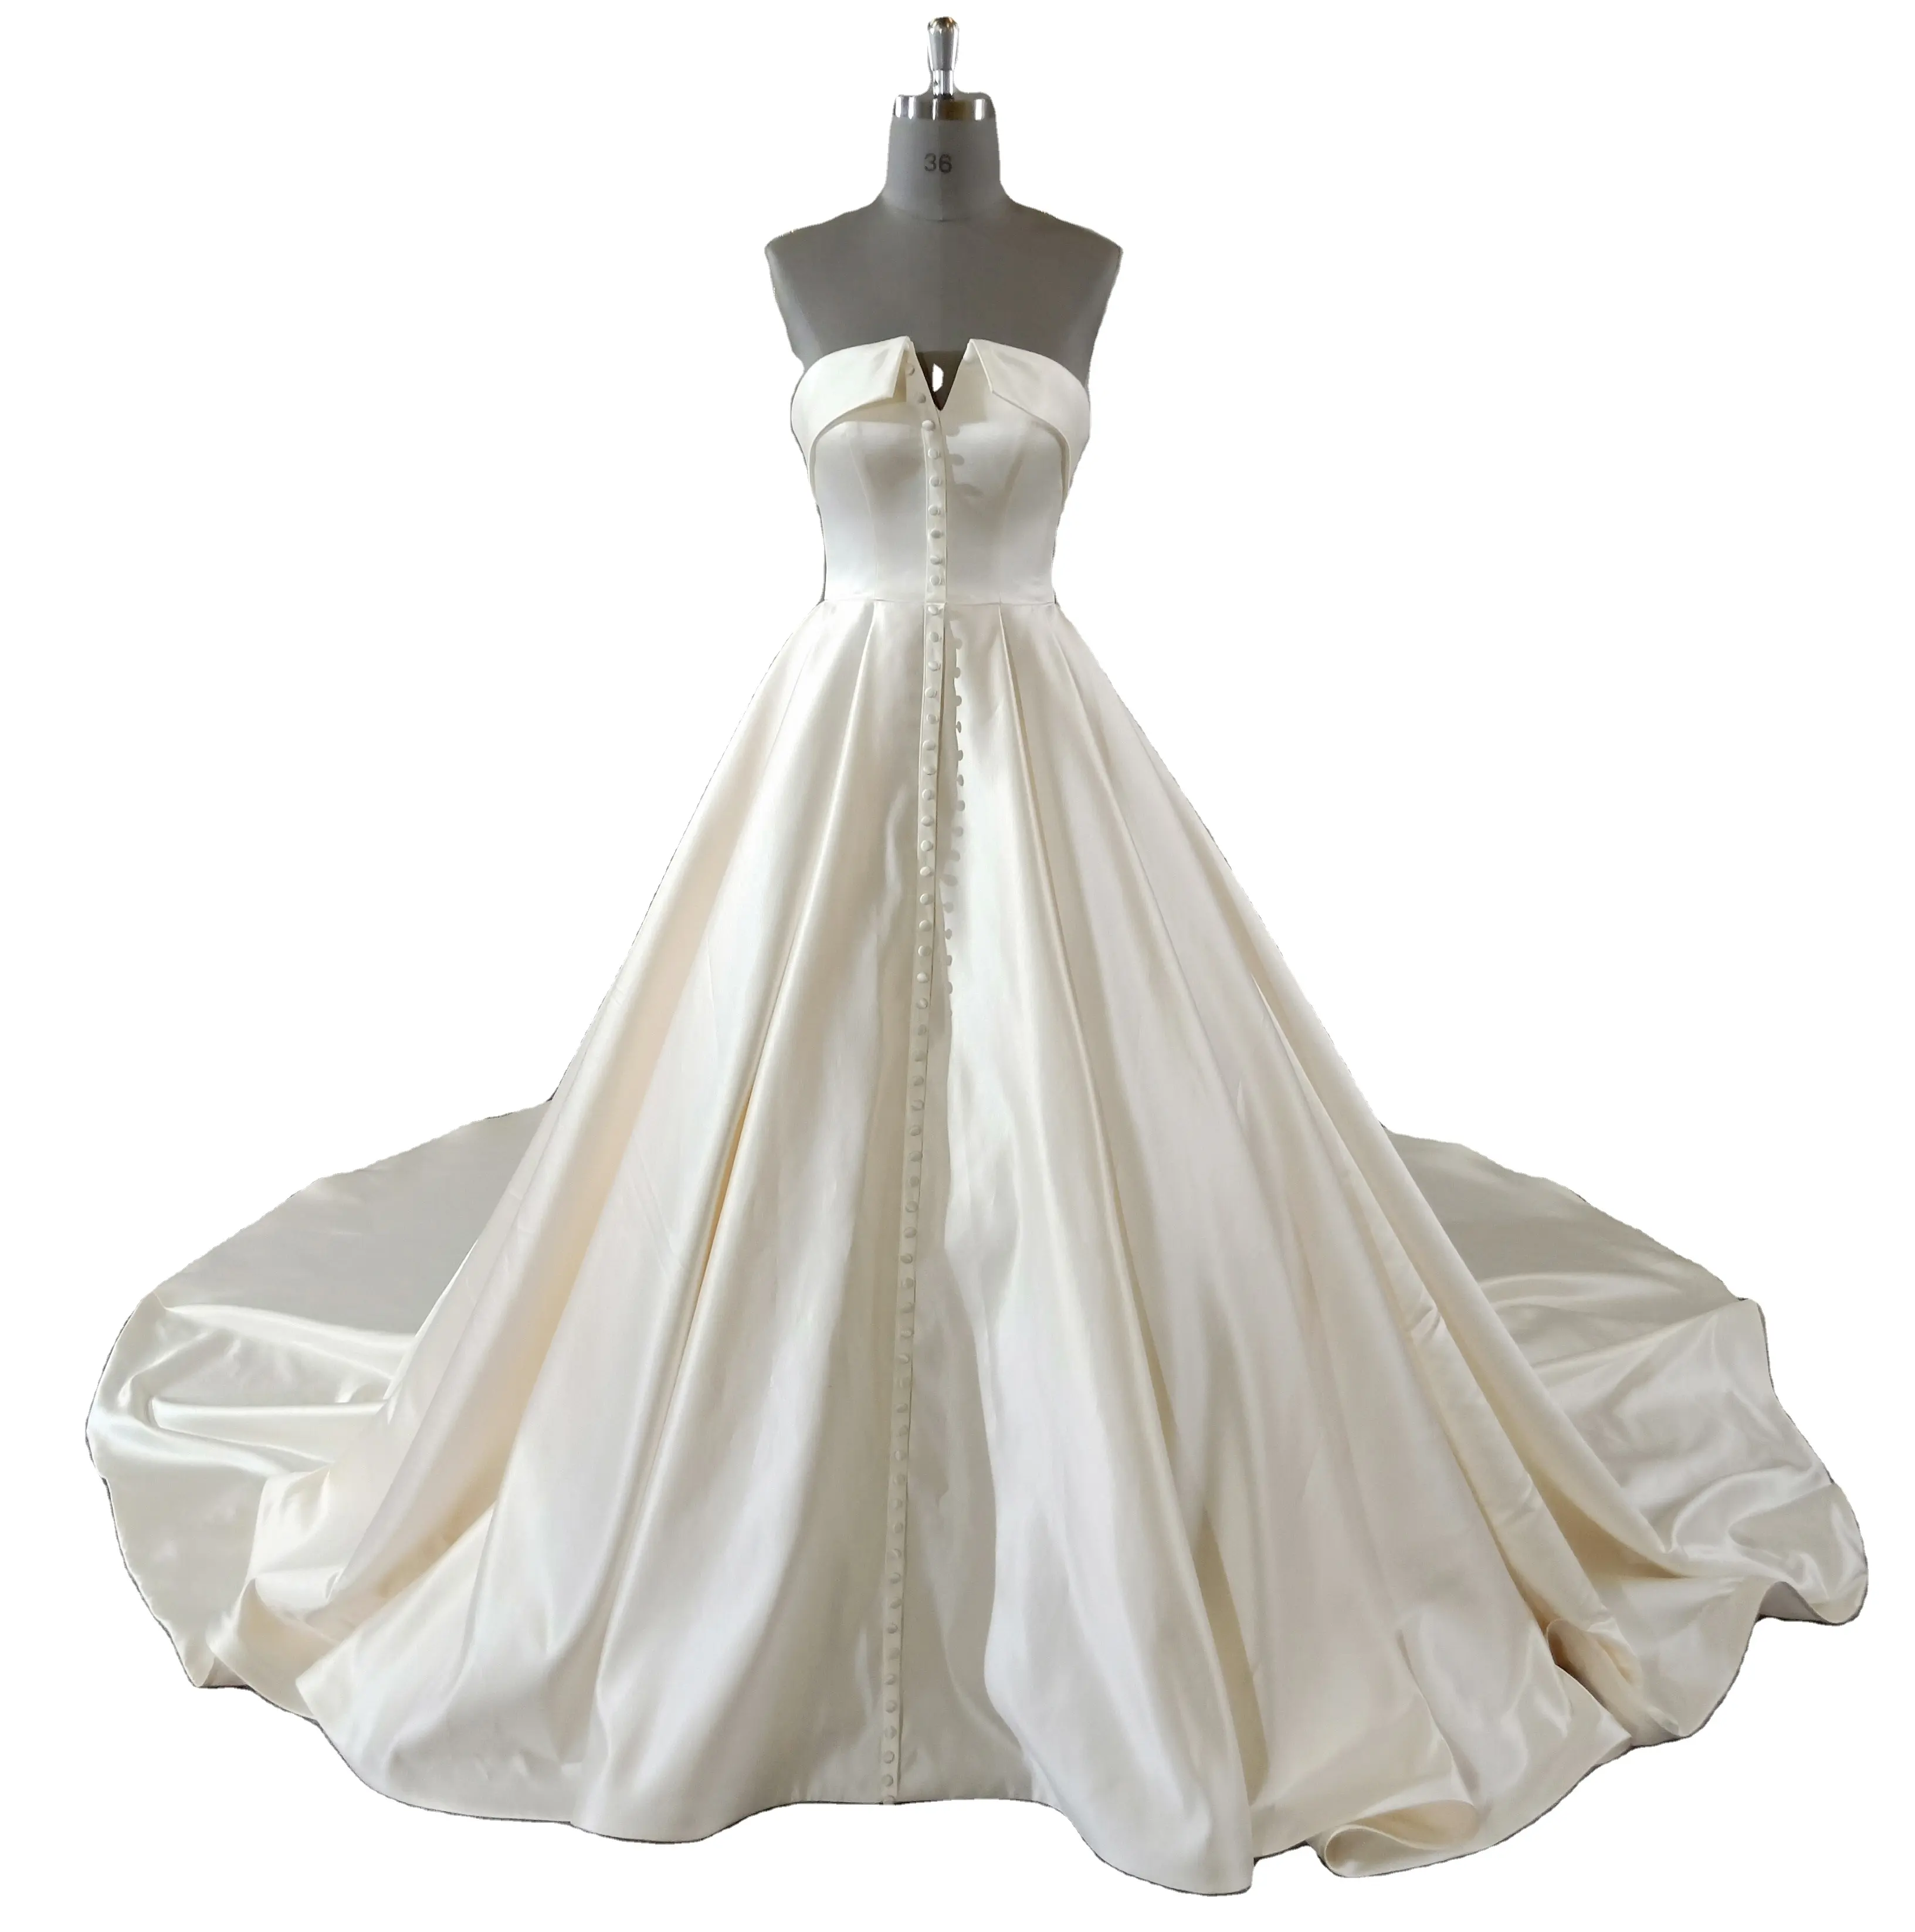 Gaun pernikahan satin bahu terbuka desain spesial kualitas tinggi untuk anak perempuan